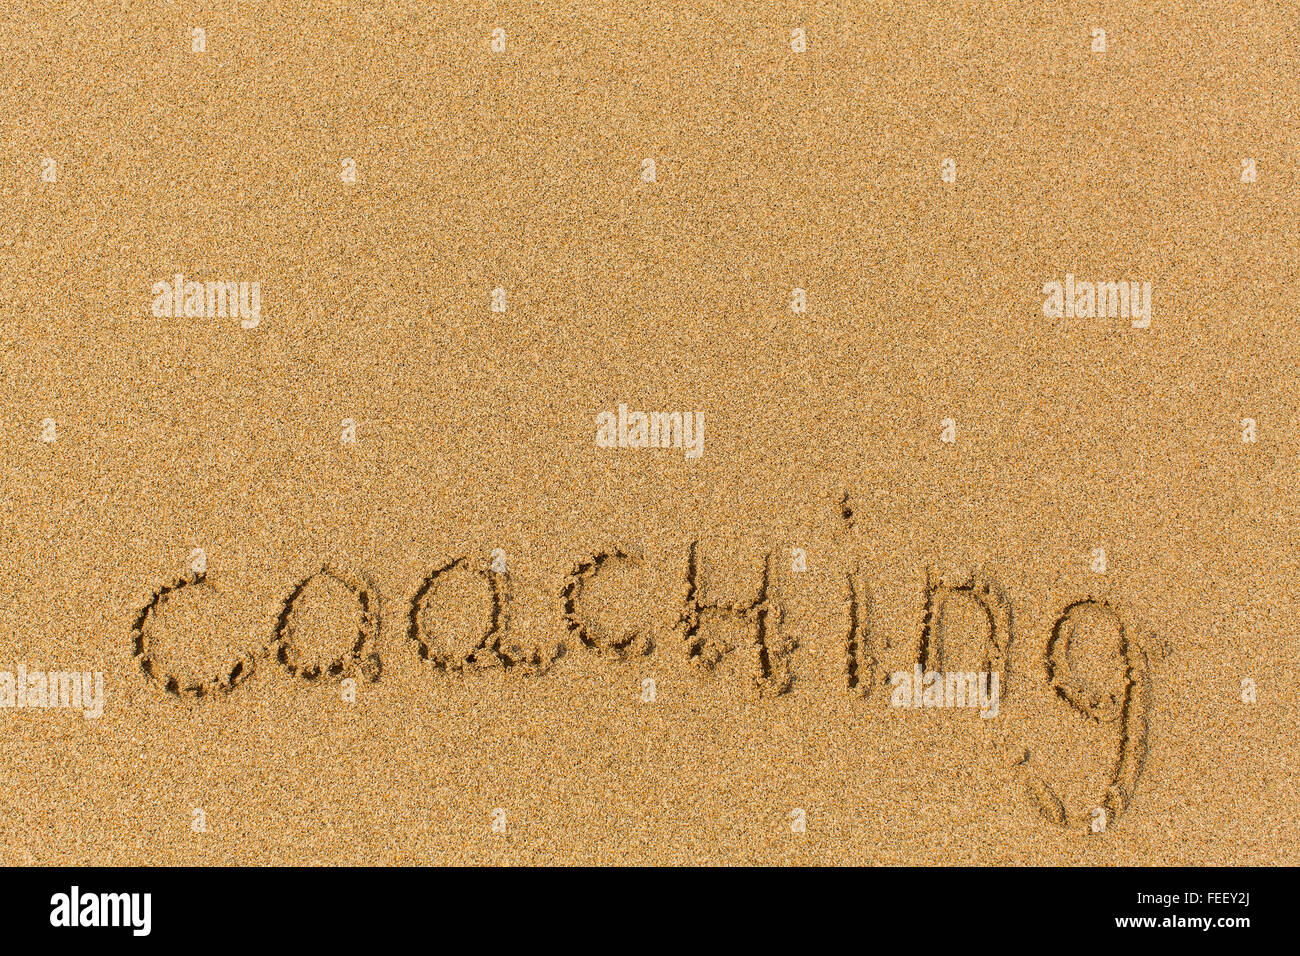 Coaching - mot dessiné sur la plage de sable fin. Contexte, la texture du sable. Banque D'Images